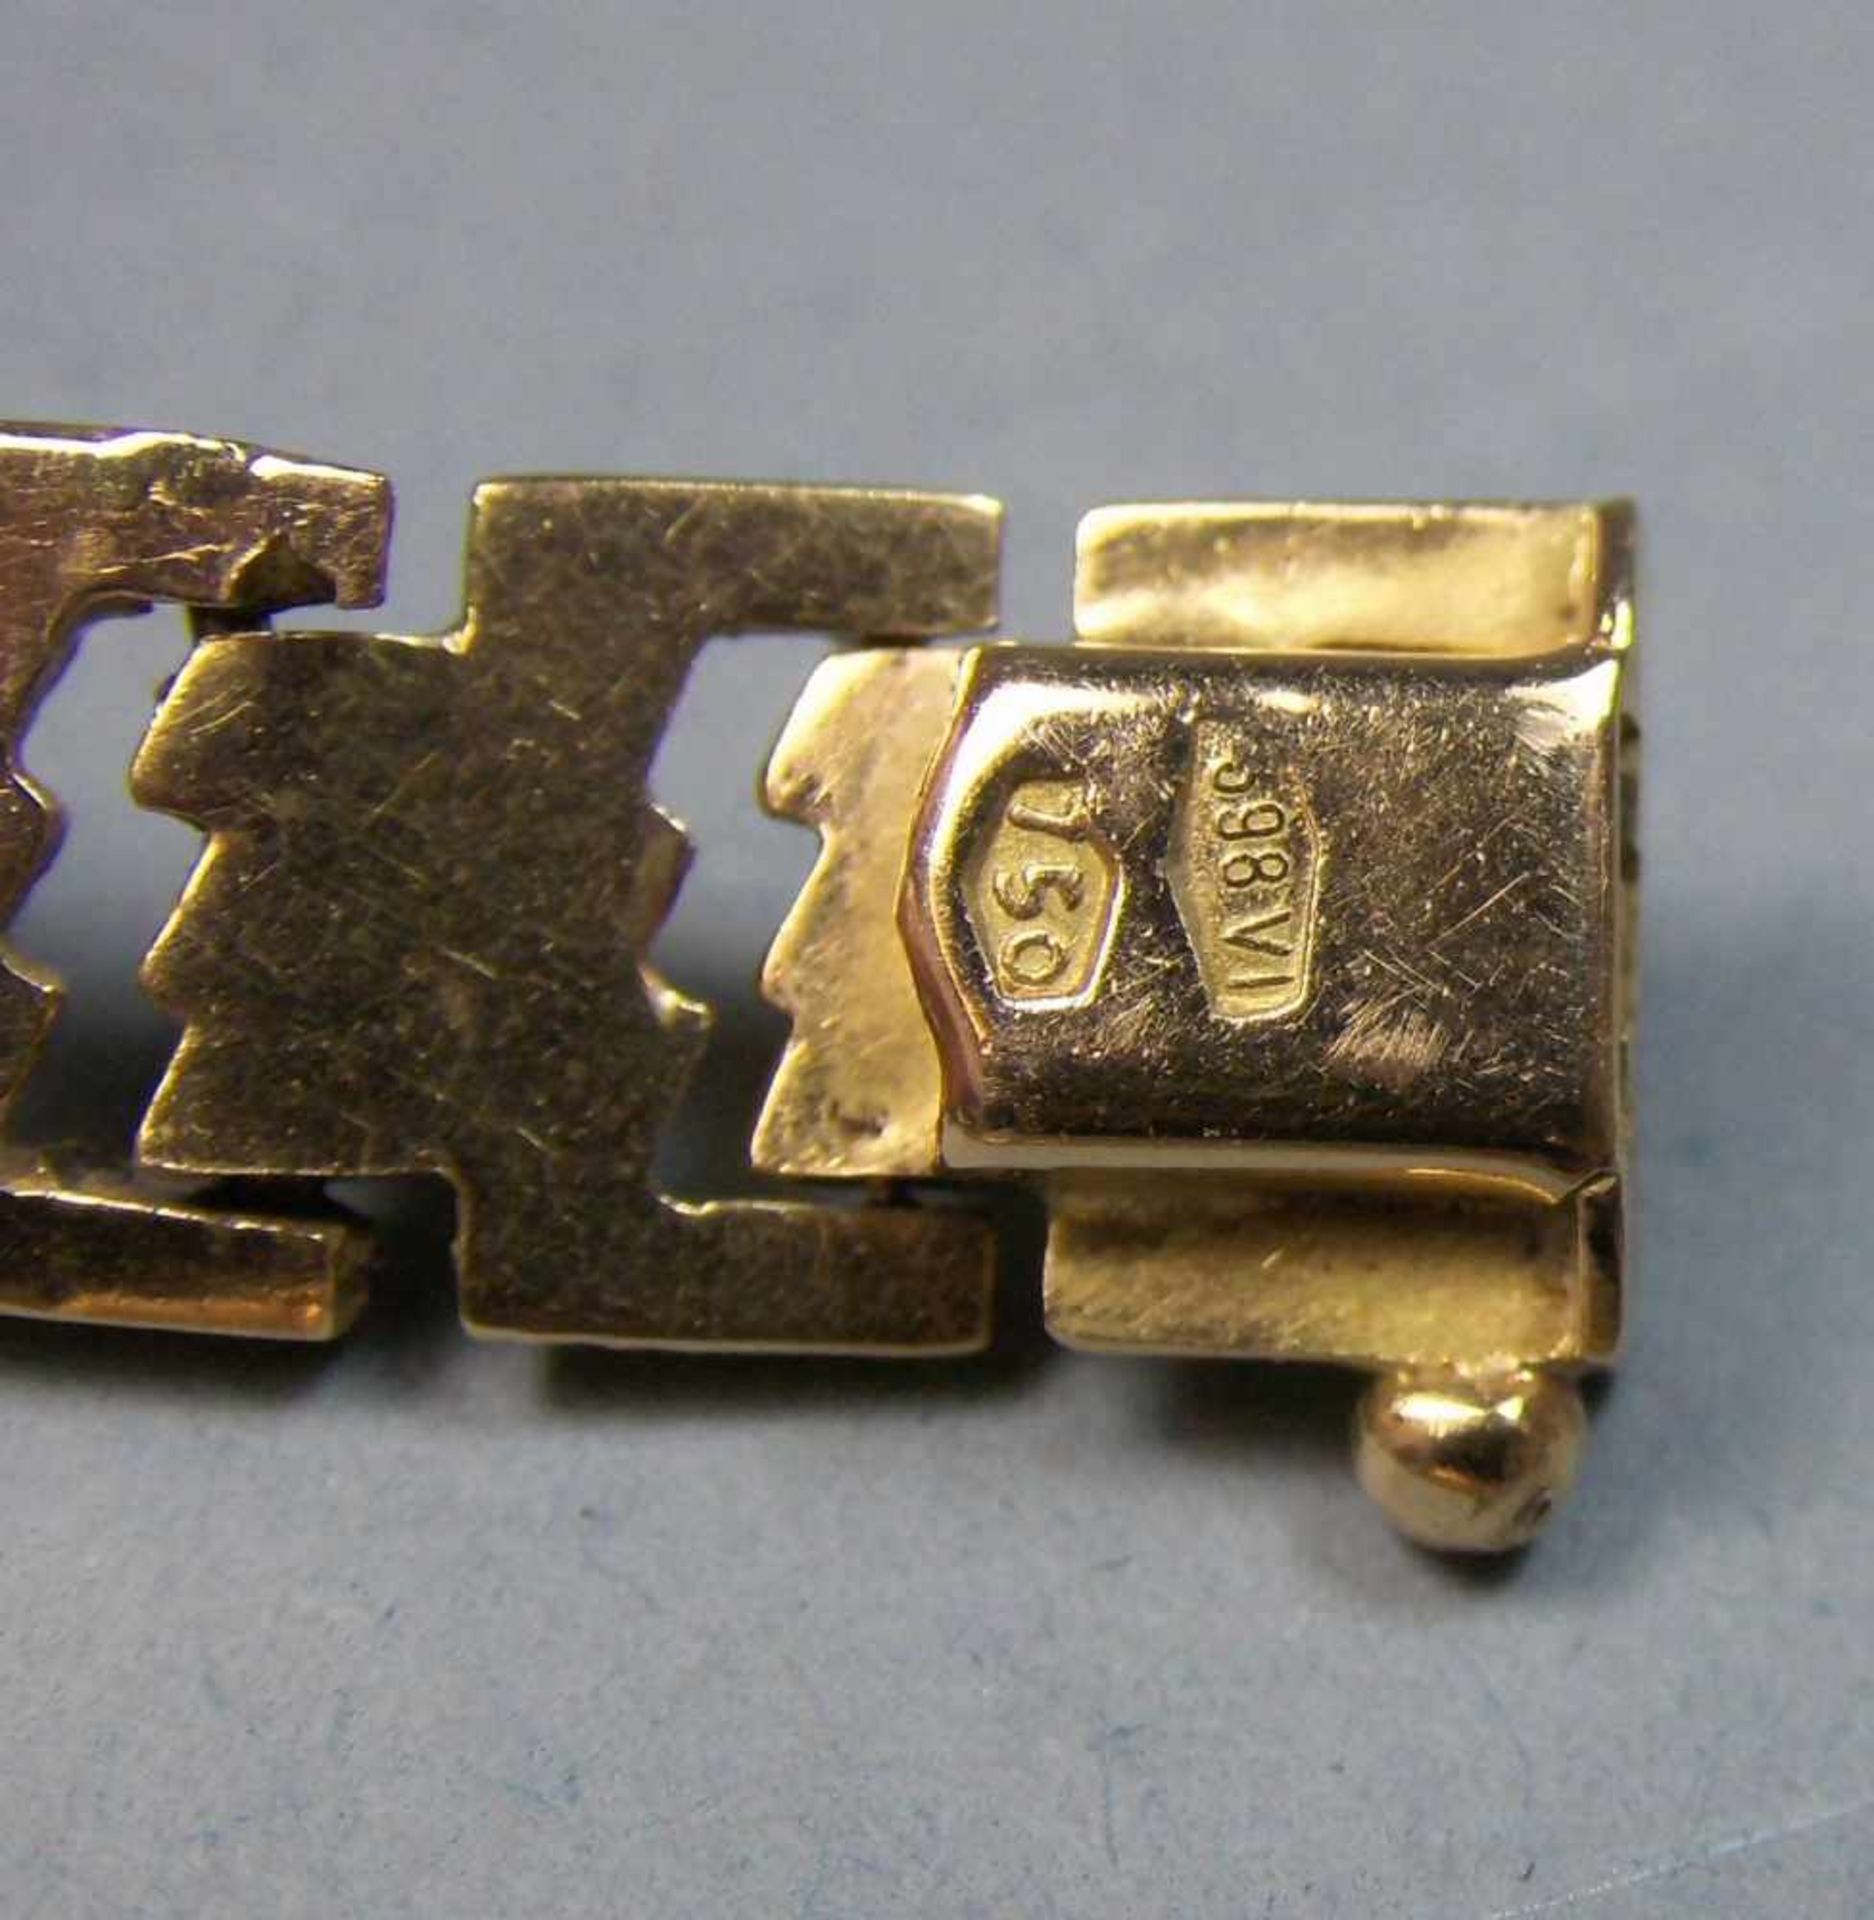 ARMBAND / bracelet aus 750er Gelbgold (Gewicht mit Verlängerung: 15,3 g), Sicherheitsverschluss, - Image 4 of 5